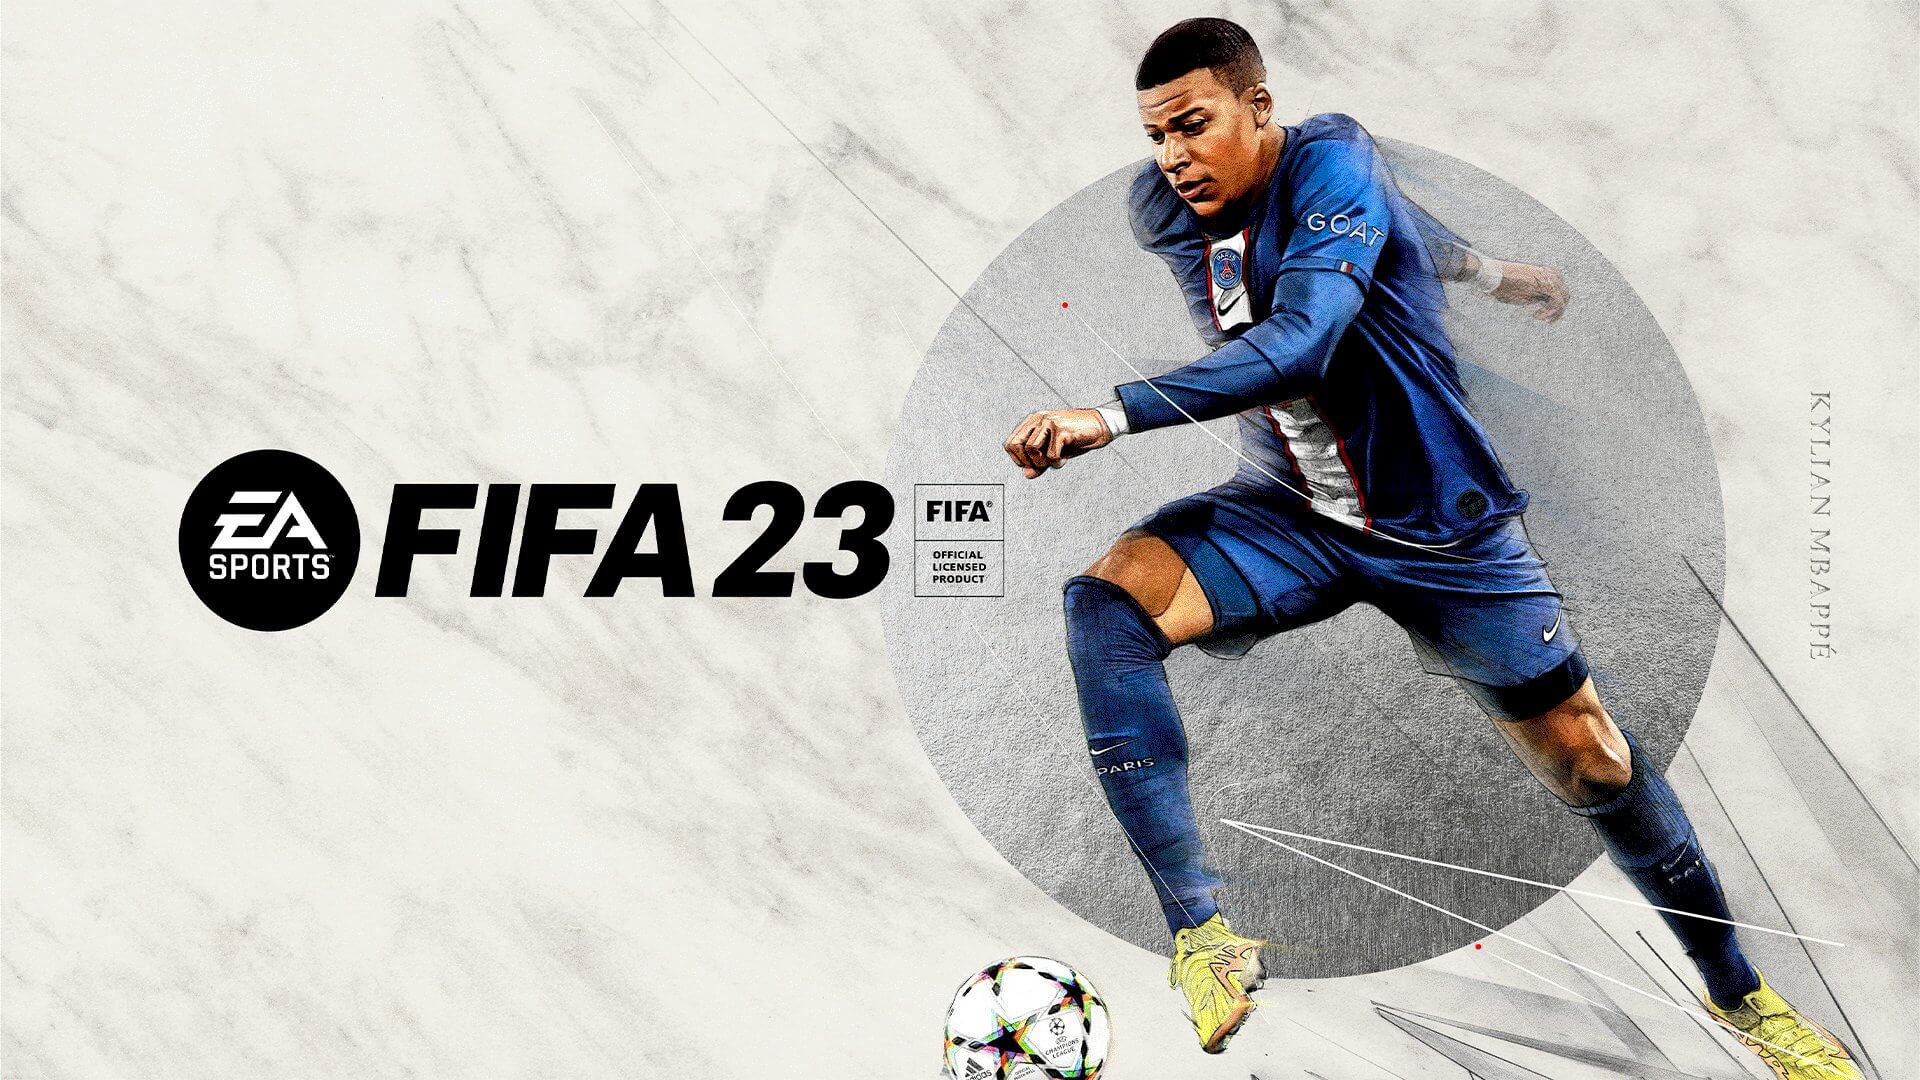 EA는 FIFA 23을 위해 유벤투스와 계약을 체결했습니다!